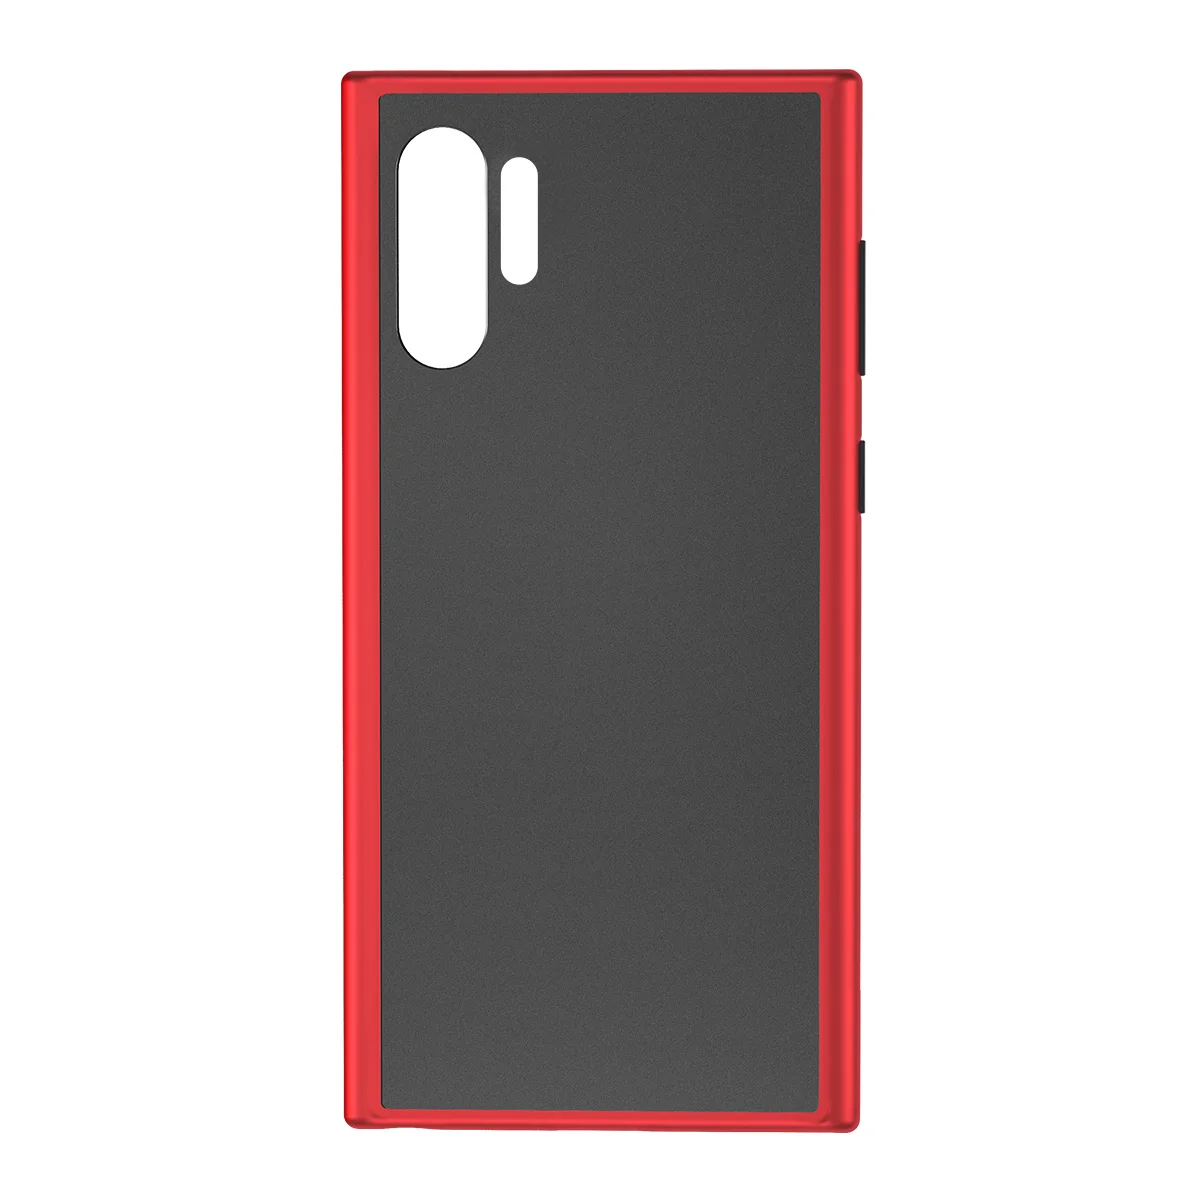 ROCK мягкий силиконовый ПК+ ТПУ чехол для samsung Galaxy Note 10 Note10 Plus противоударный бампер пуленепробиваемый стеклянный клей задняя крышка - Цвет: Красный